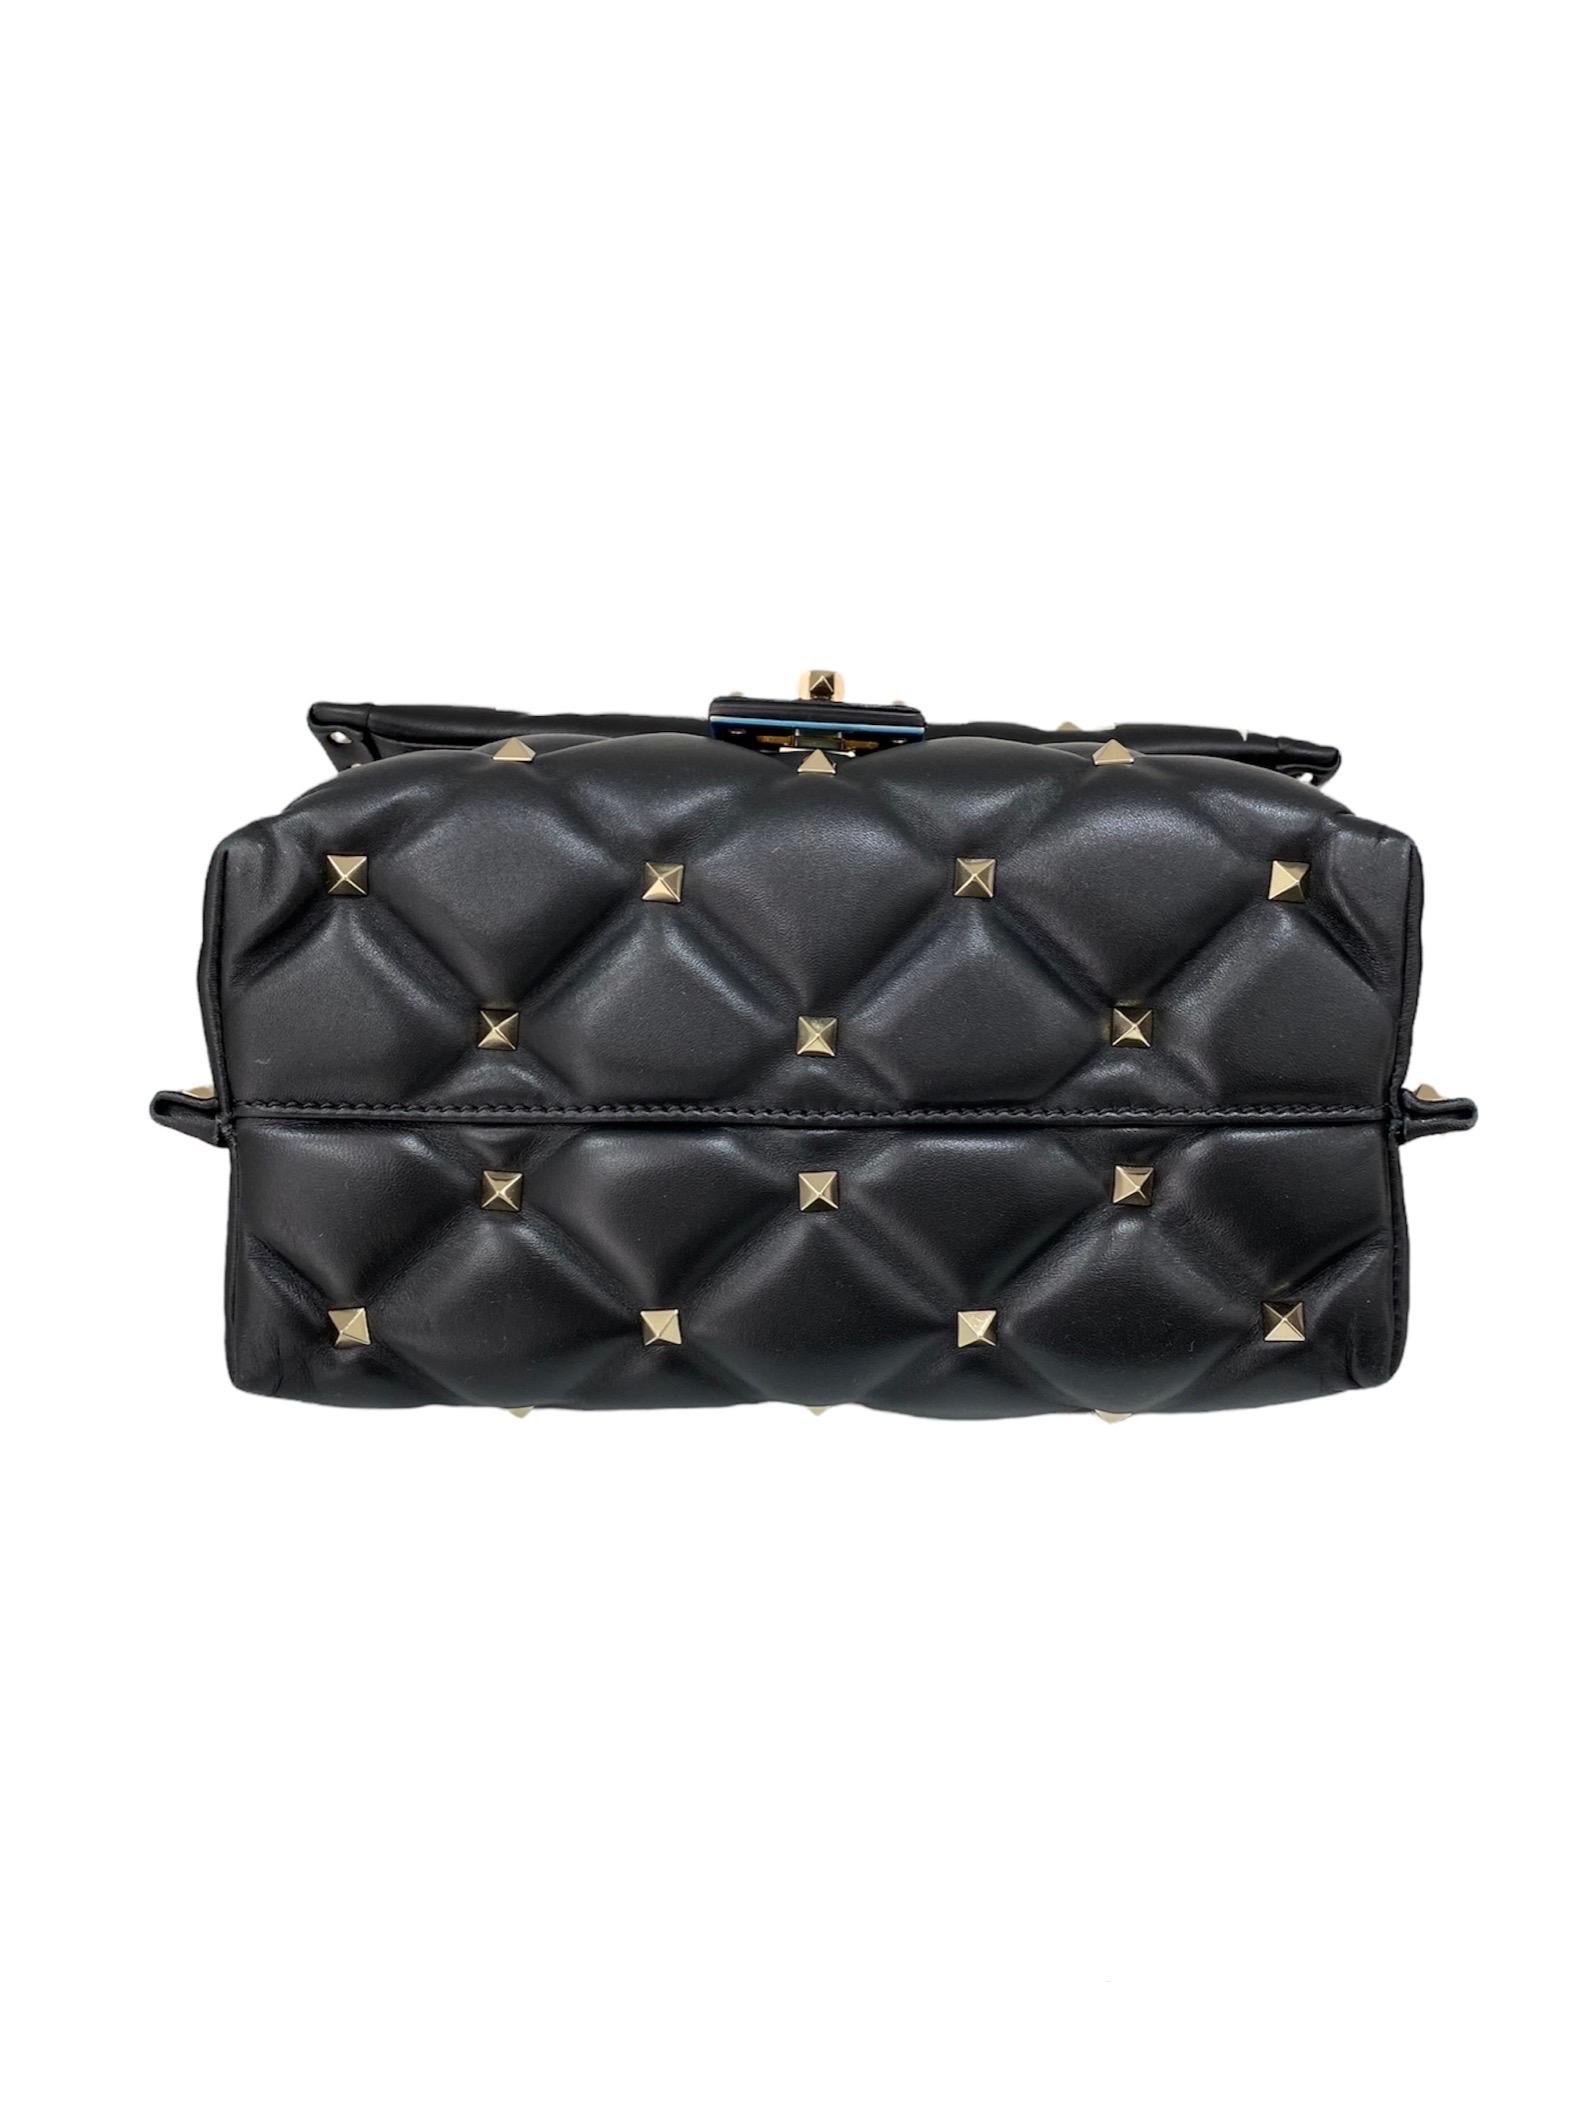 Valentino Candystud Black Handbag 2